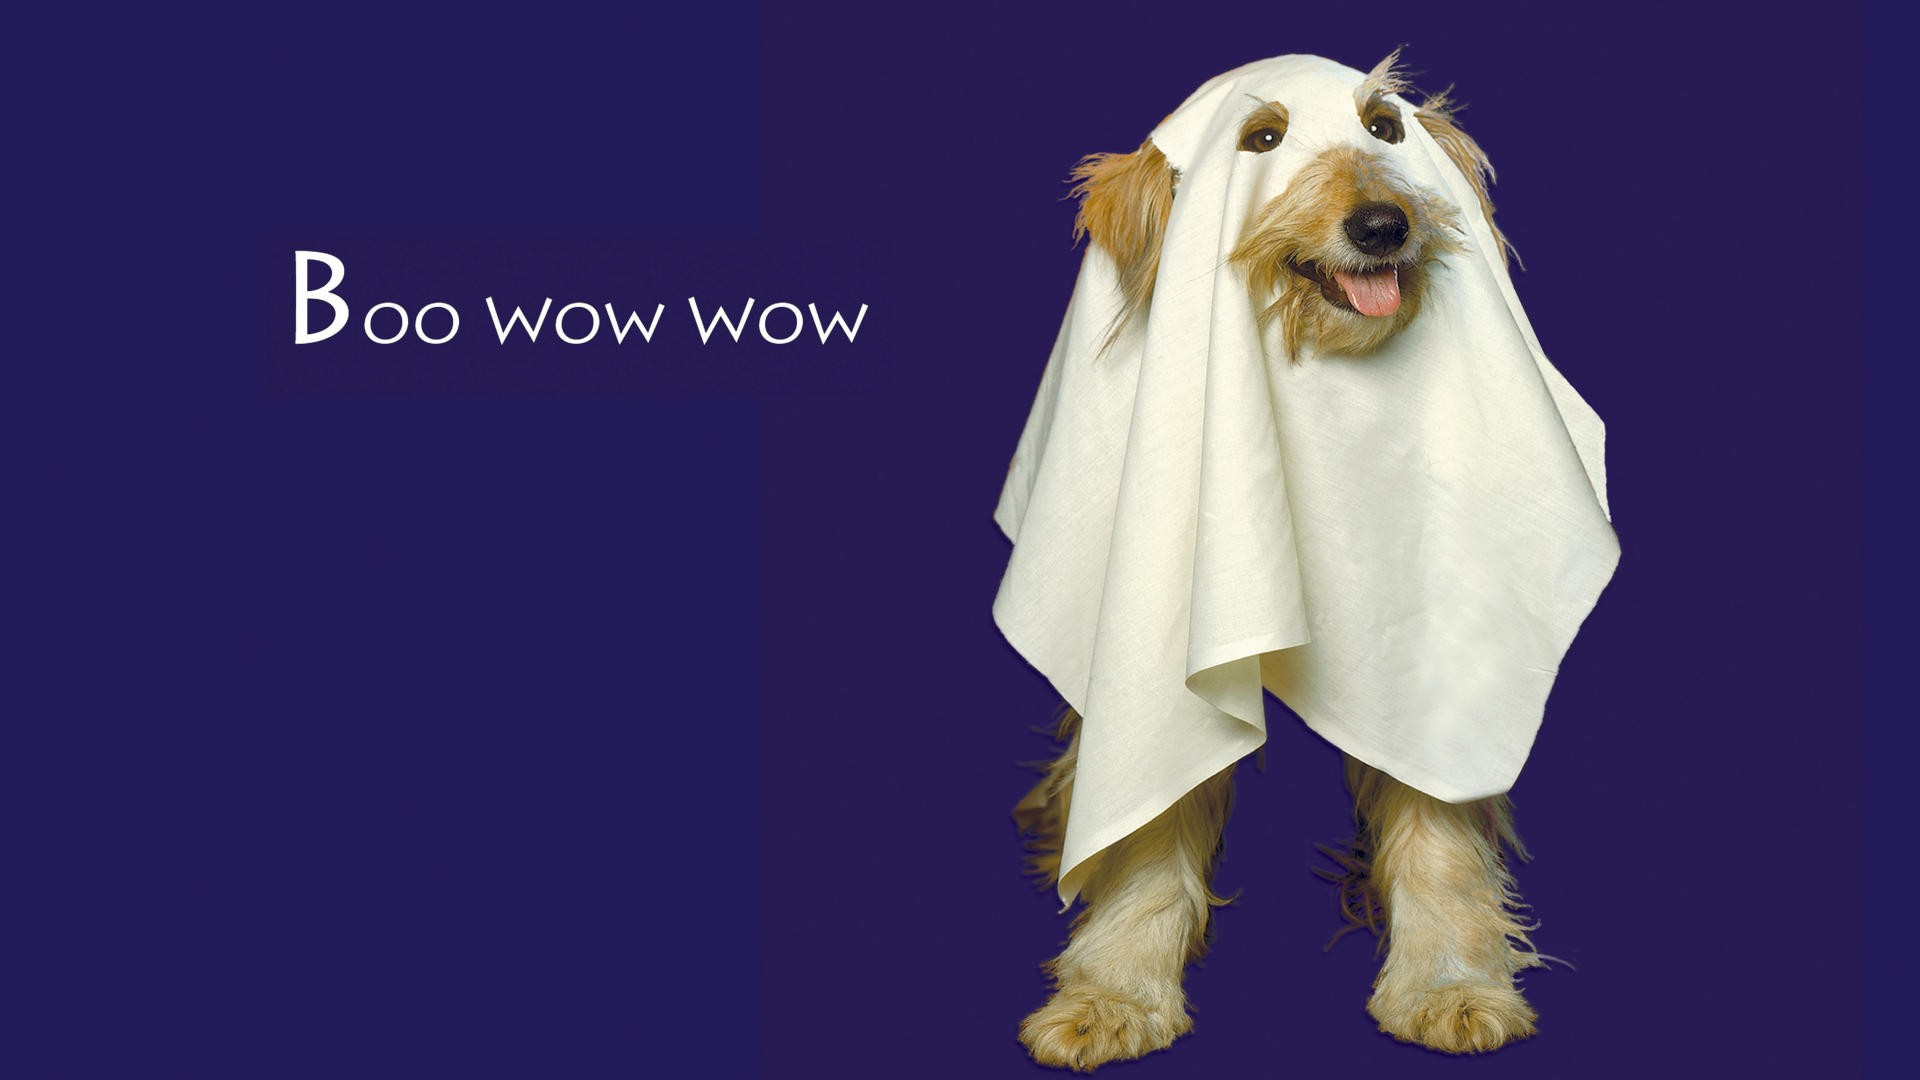 39296 Halloween Dog Images Stock Photos  Vectors  Shutterstock